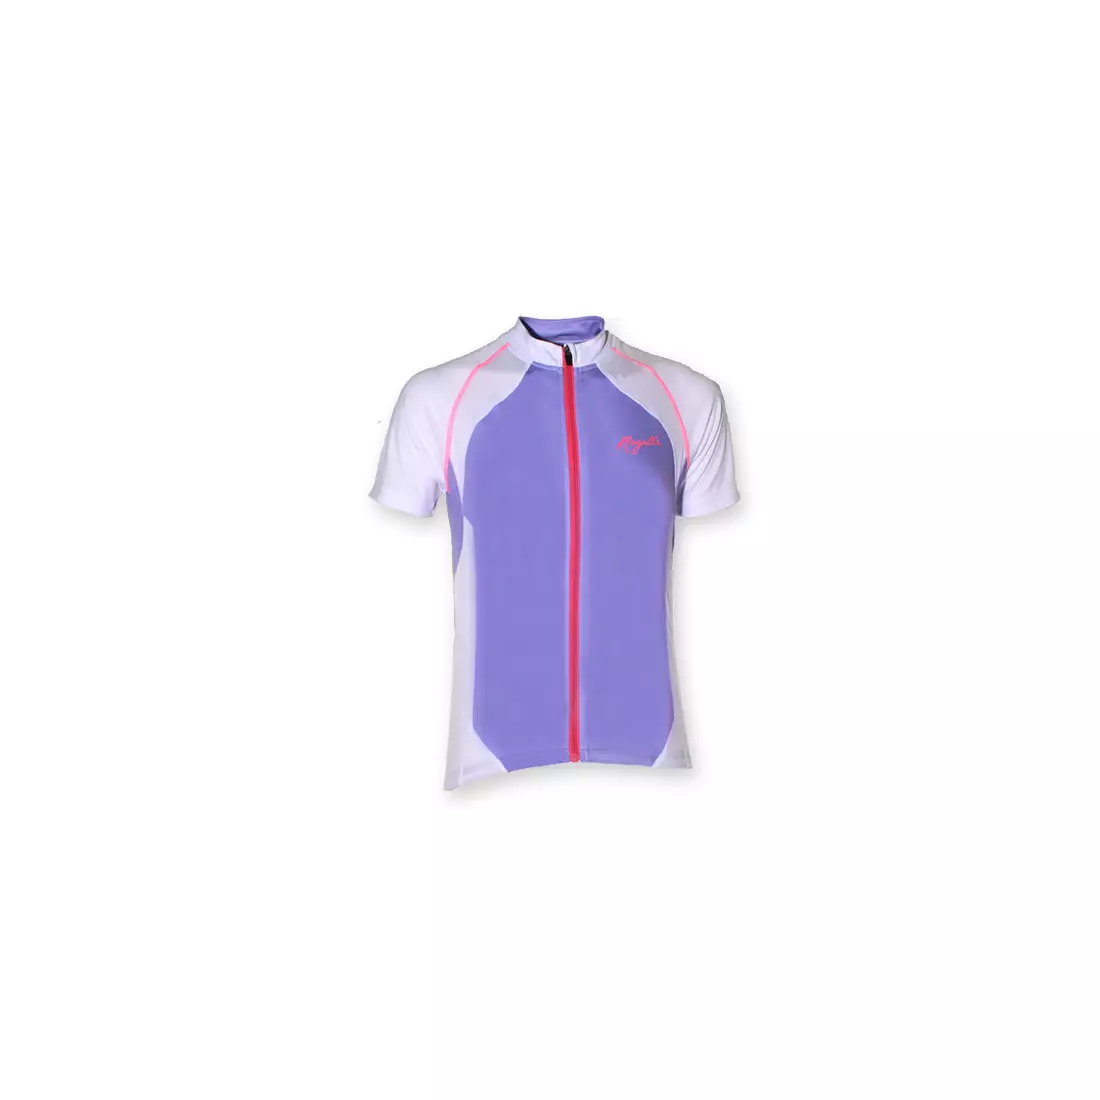 ROGELLI BICE - női kerékpáros mez, lila és fehér színben